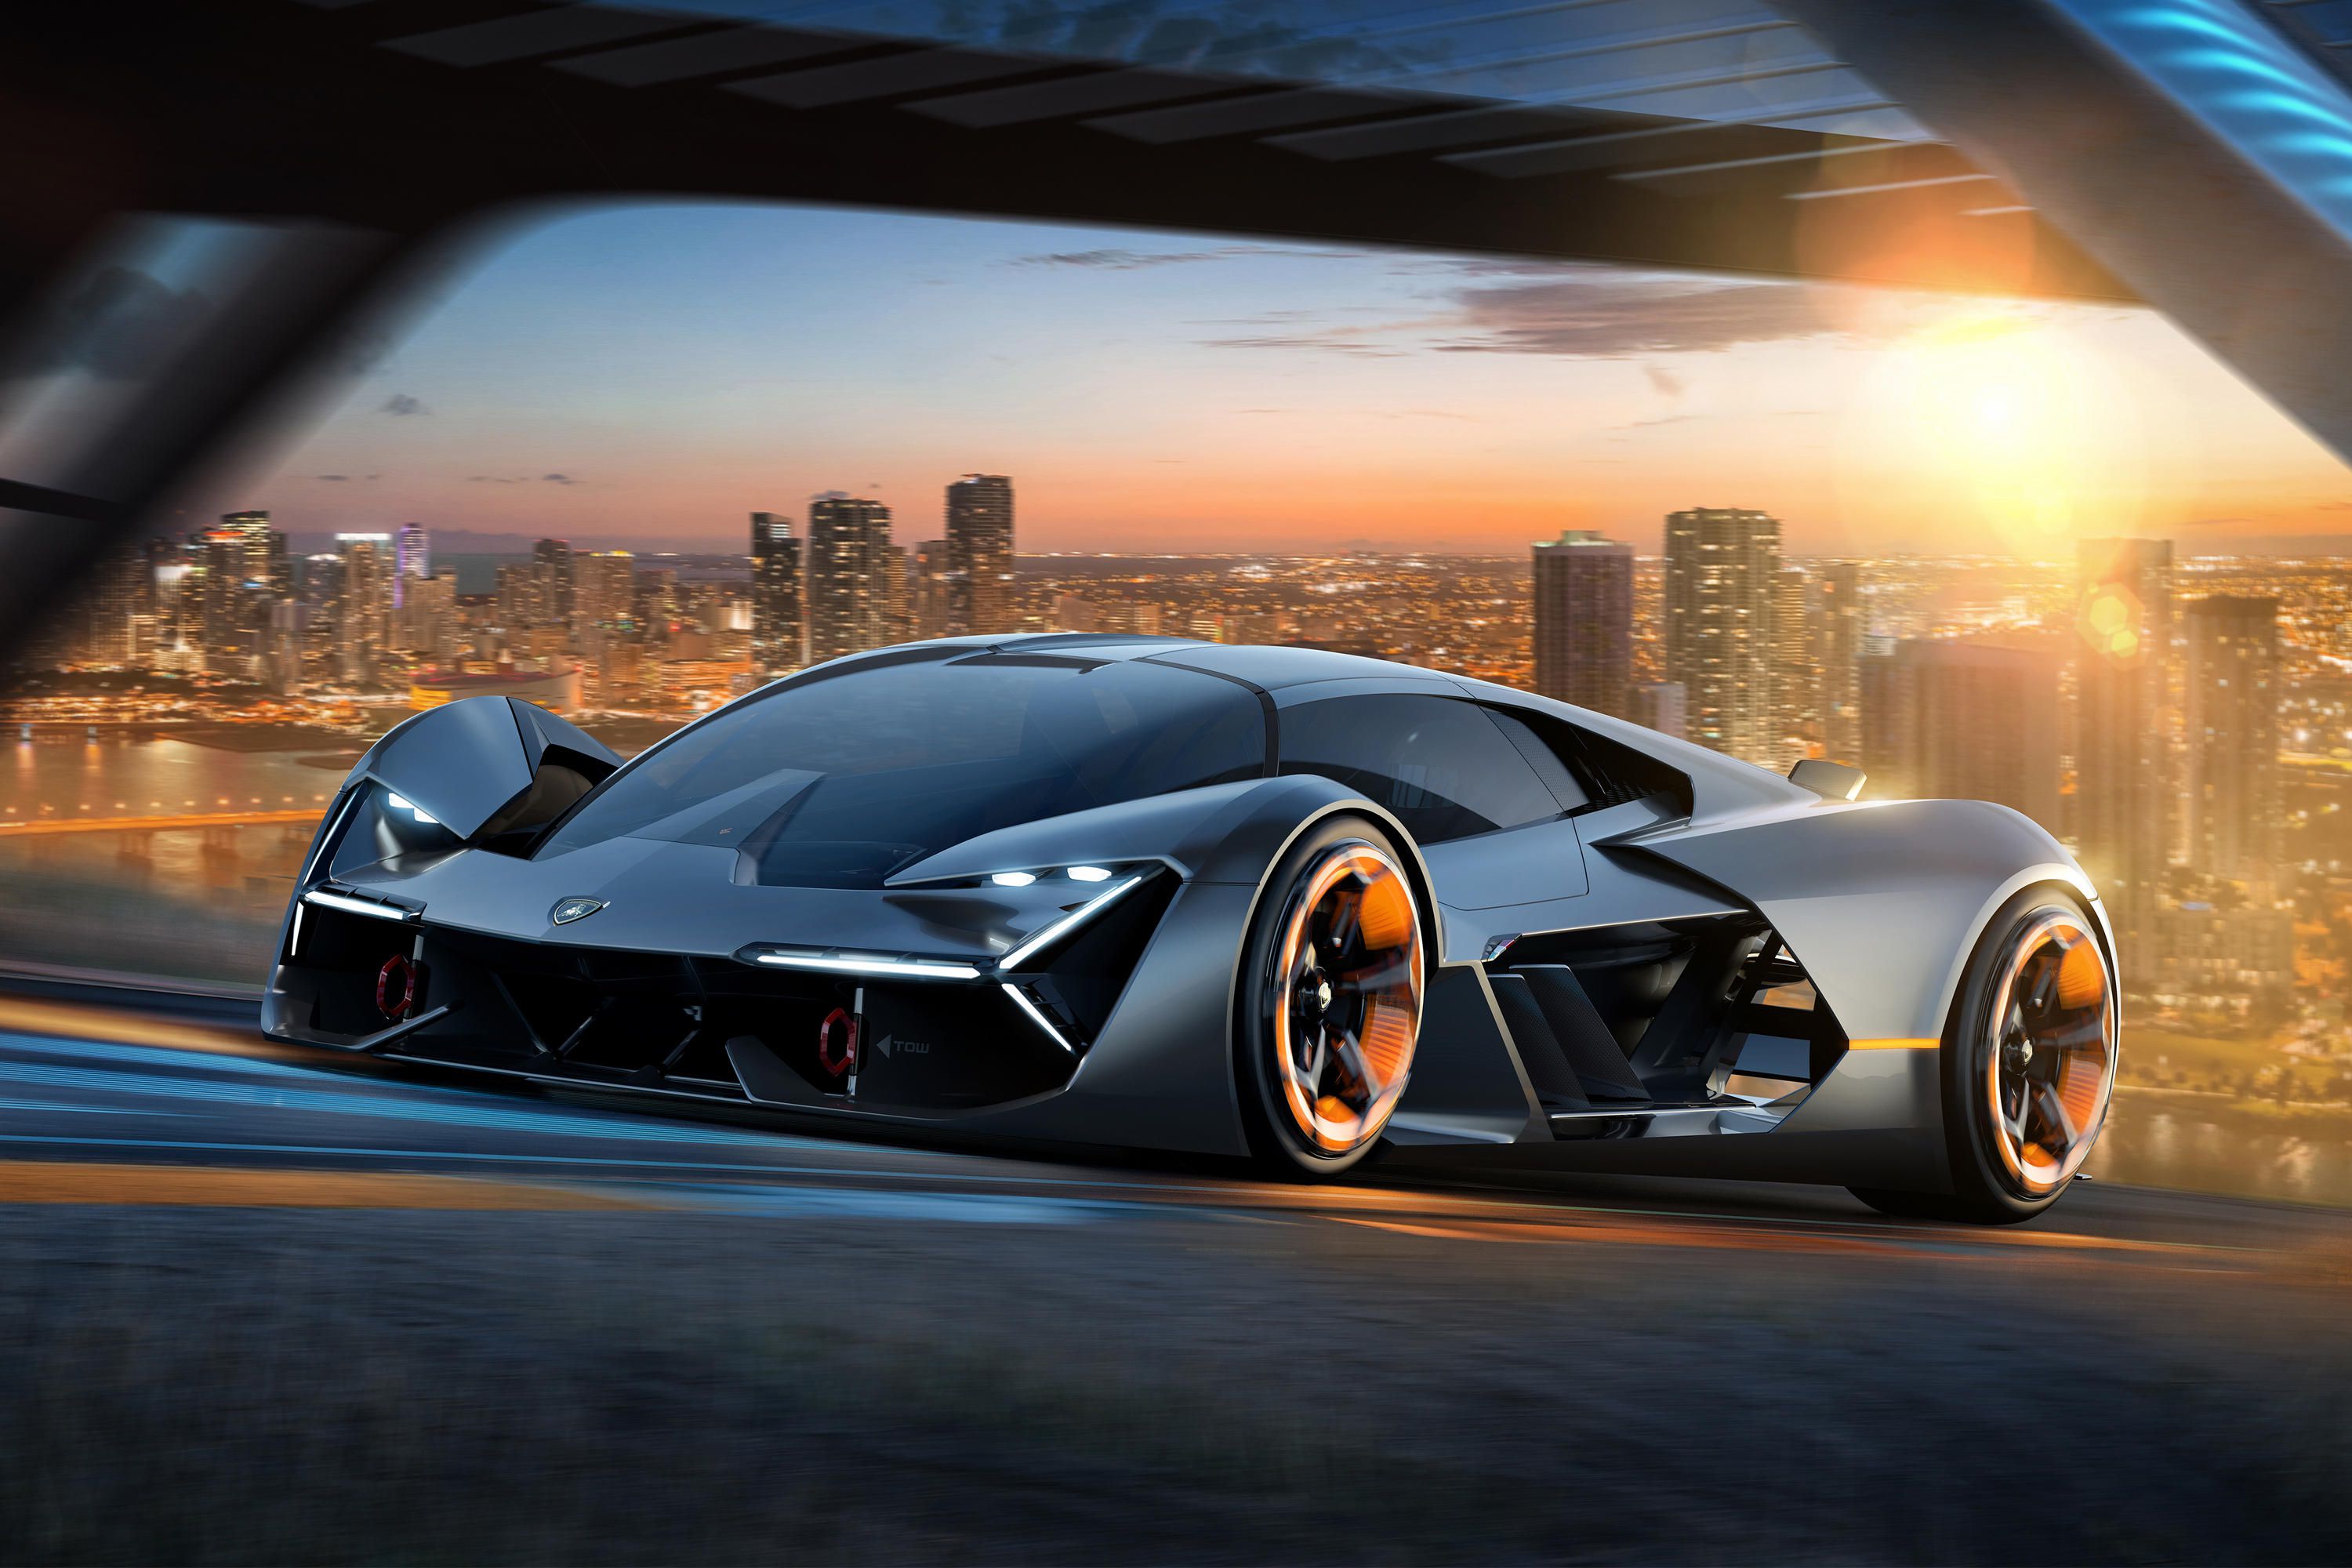 Lamborghini’s new ‘self-healing car’ intoduced by Tobu